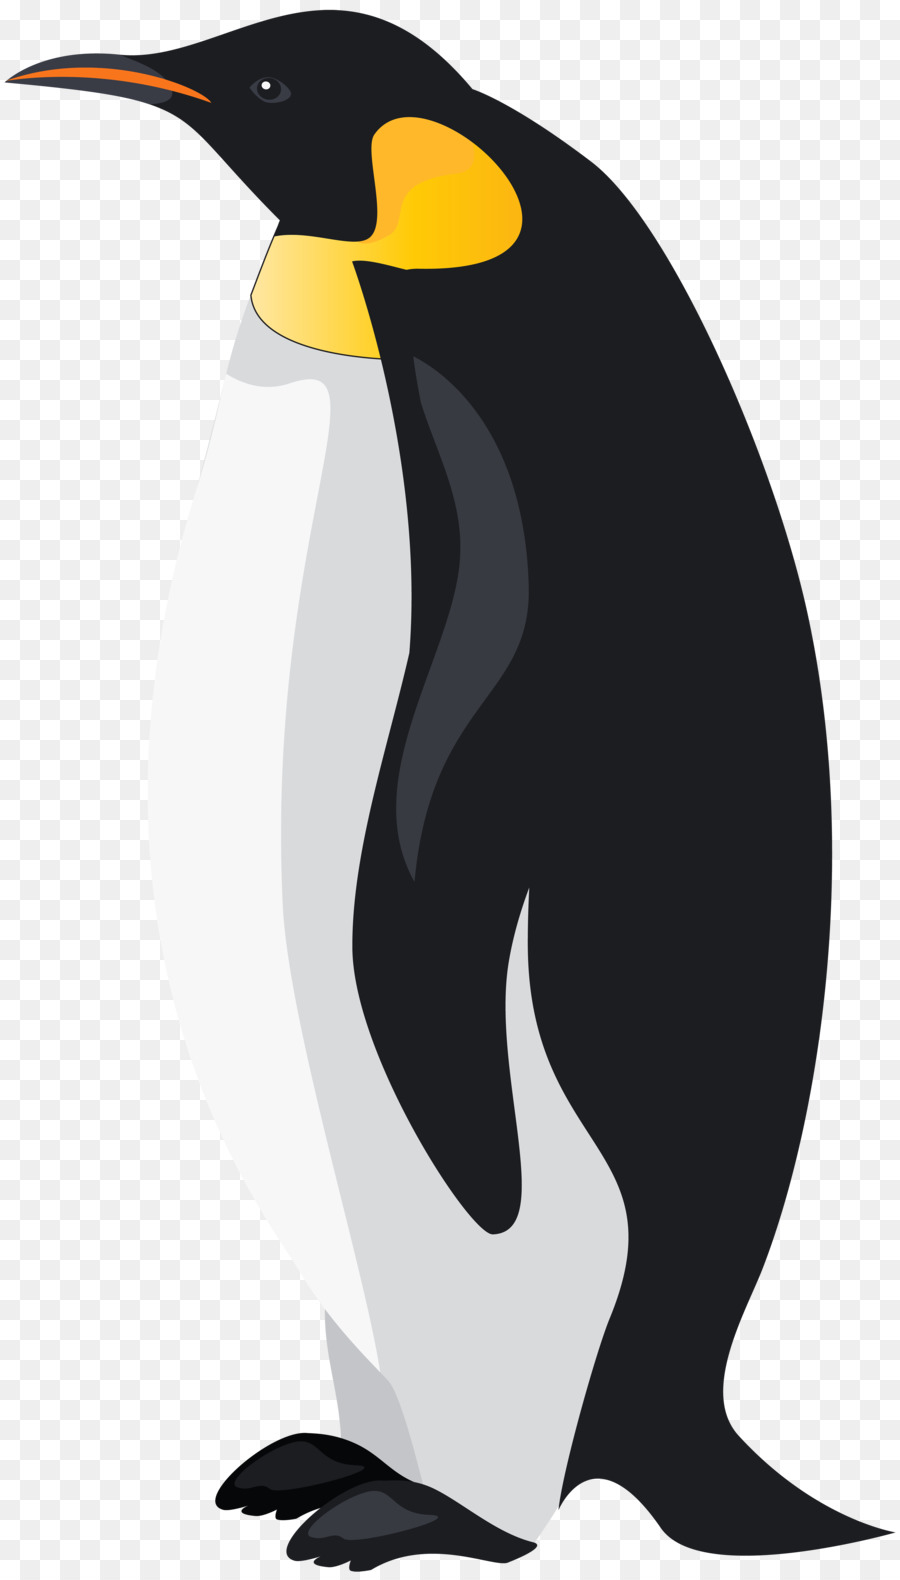 King penguin Bird Emperor Penguin Clip art - penguins png download - 4564*8000 - Free Transparent Penguin png Download.